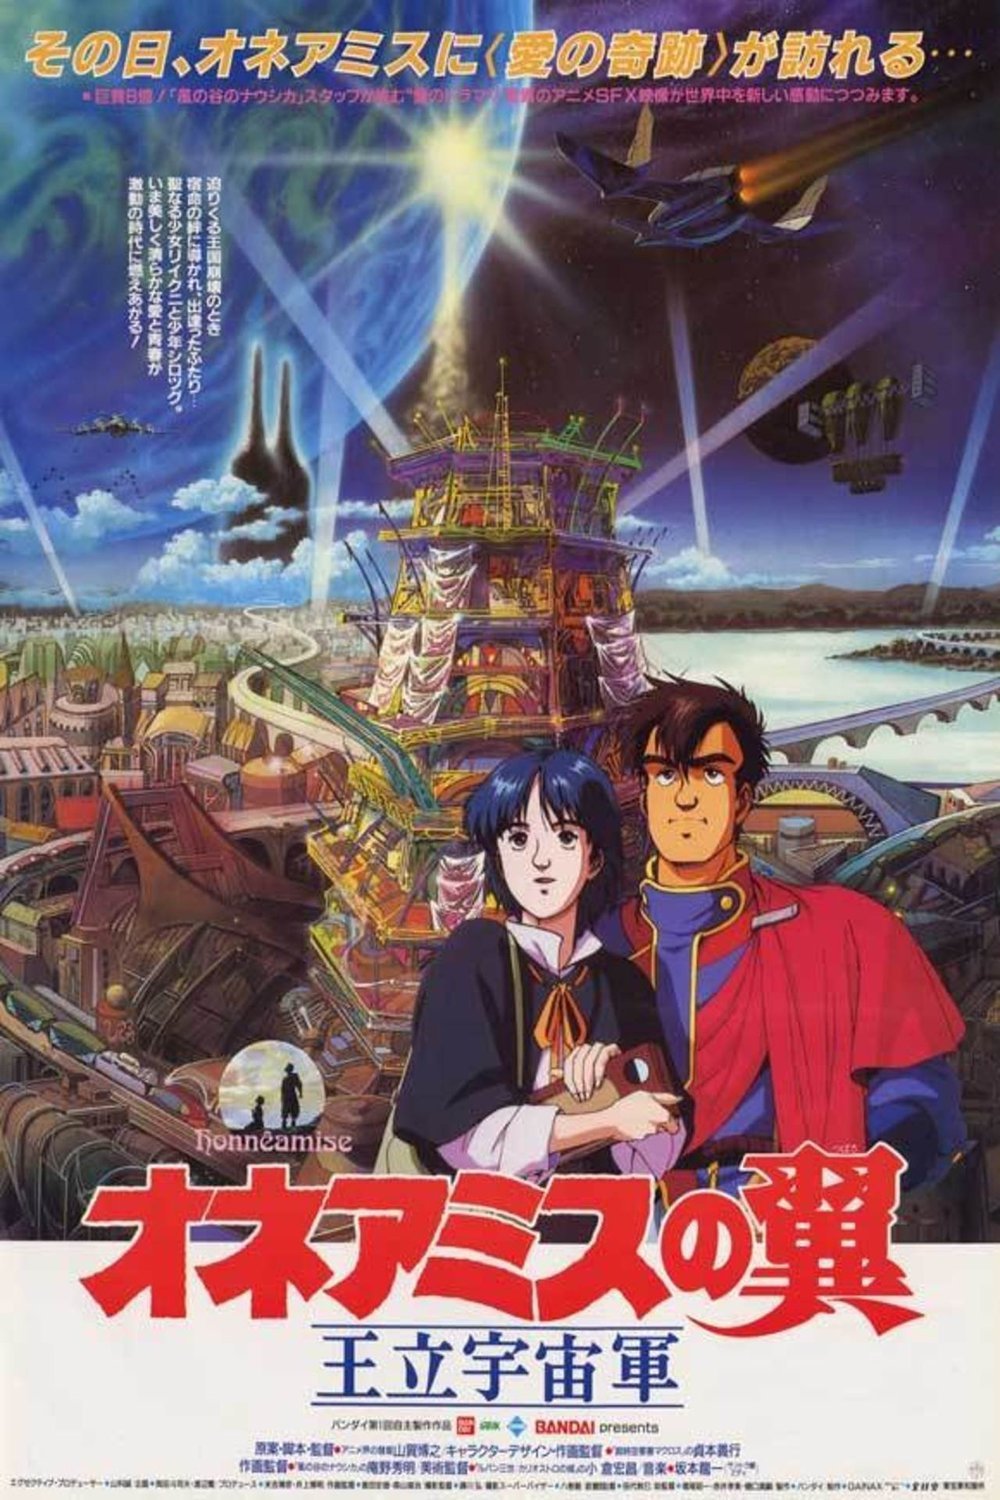 Poster of the movie Ôritsu uchûgun Oneamisu no tsubasa